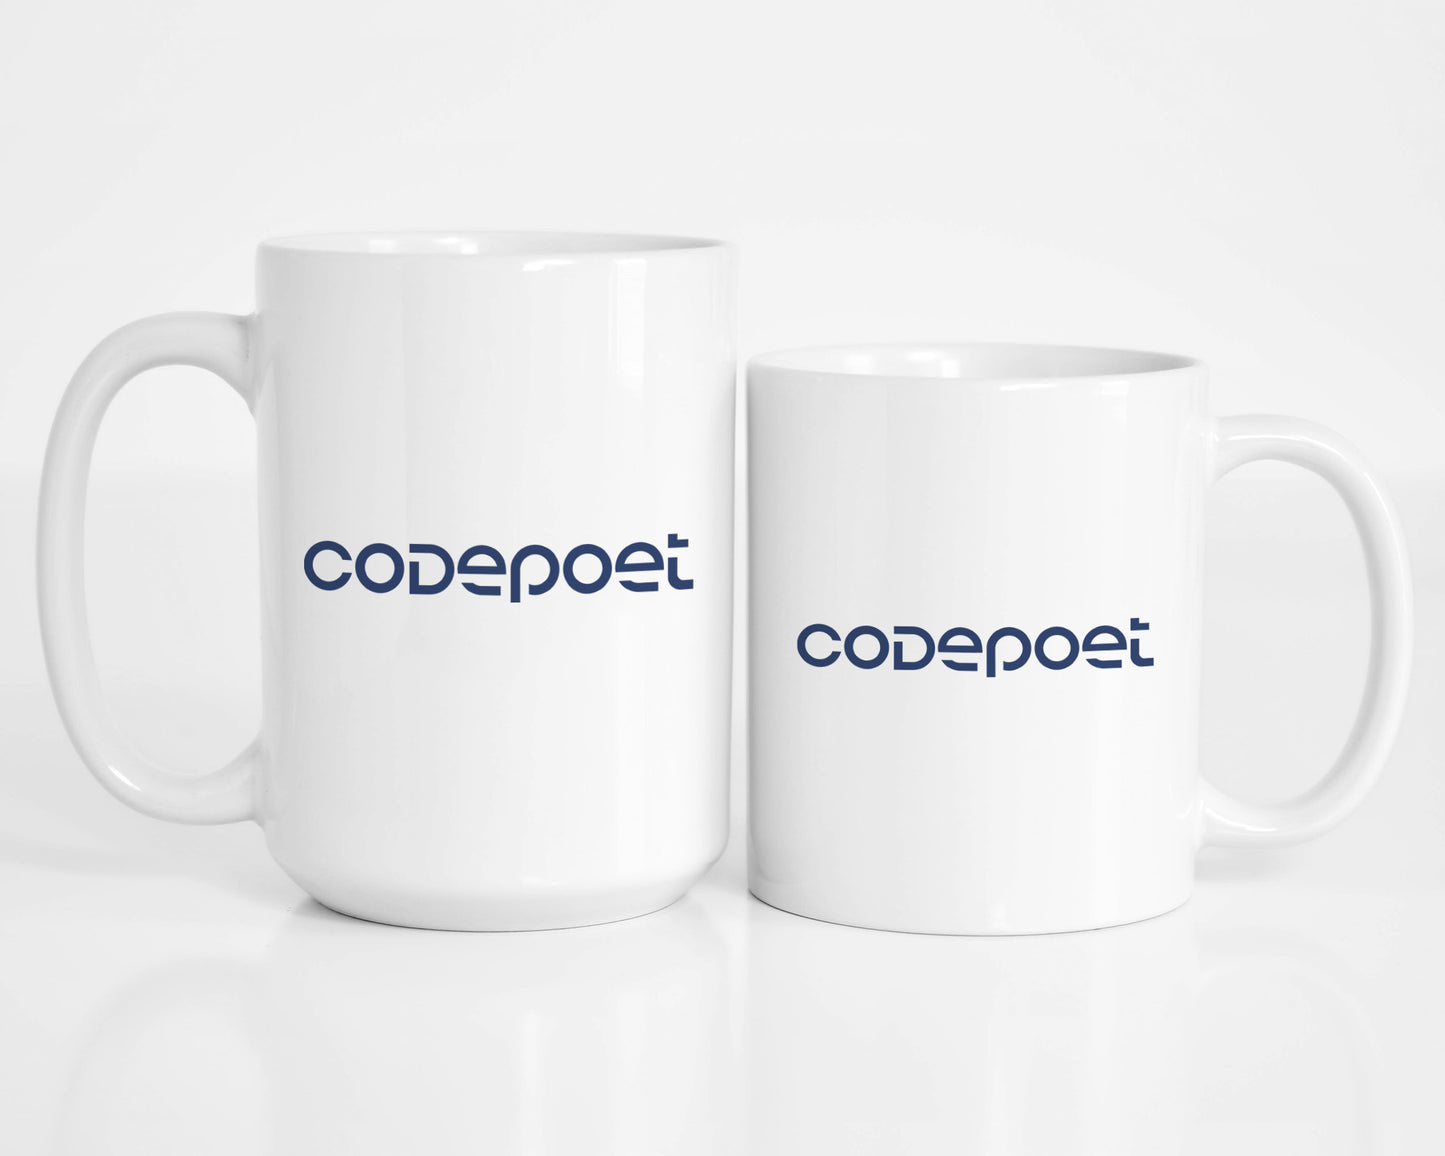 Codepoet Coffee Mug